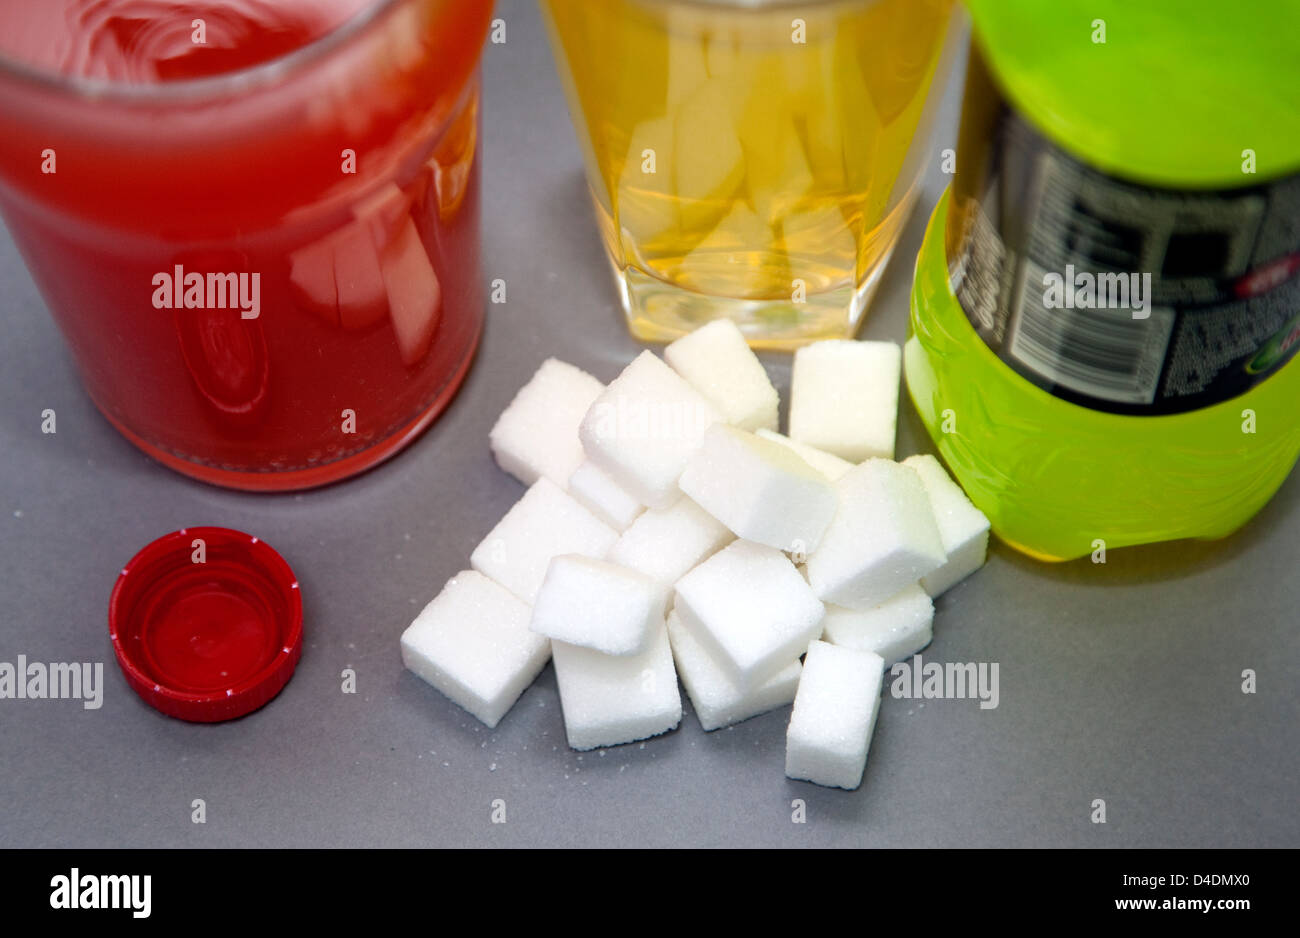 Kohlensäurehaltige Getränke mit viel Zucker sind Hauptursache von Übergewicht in UK, London Stockfoto